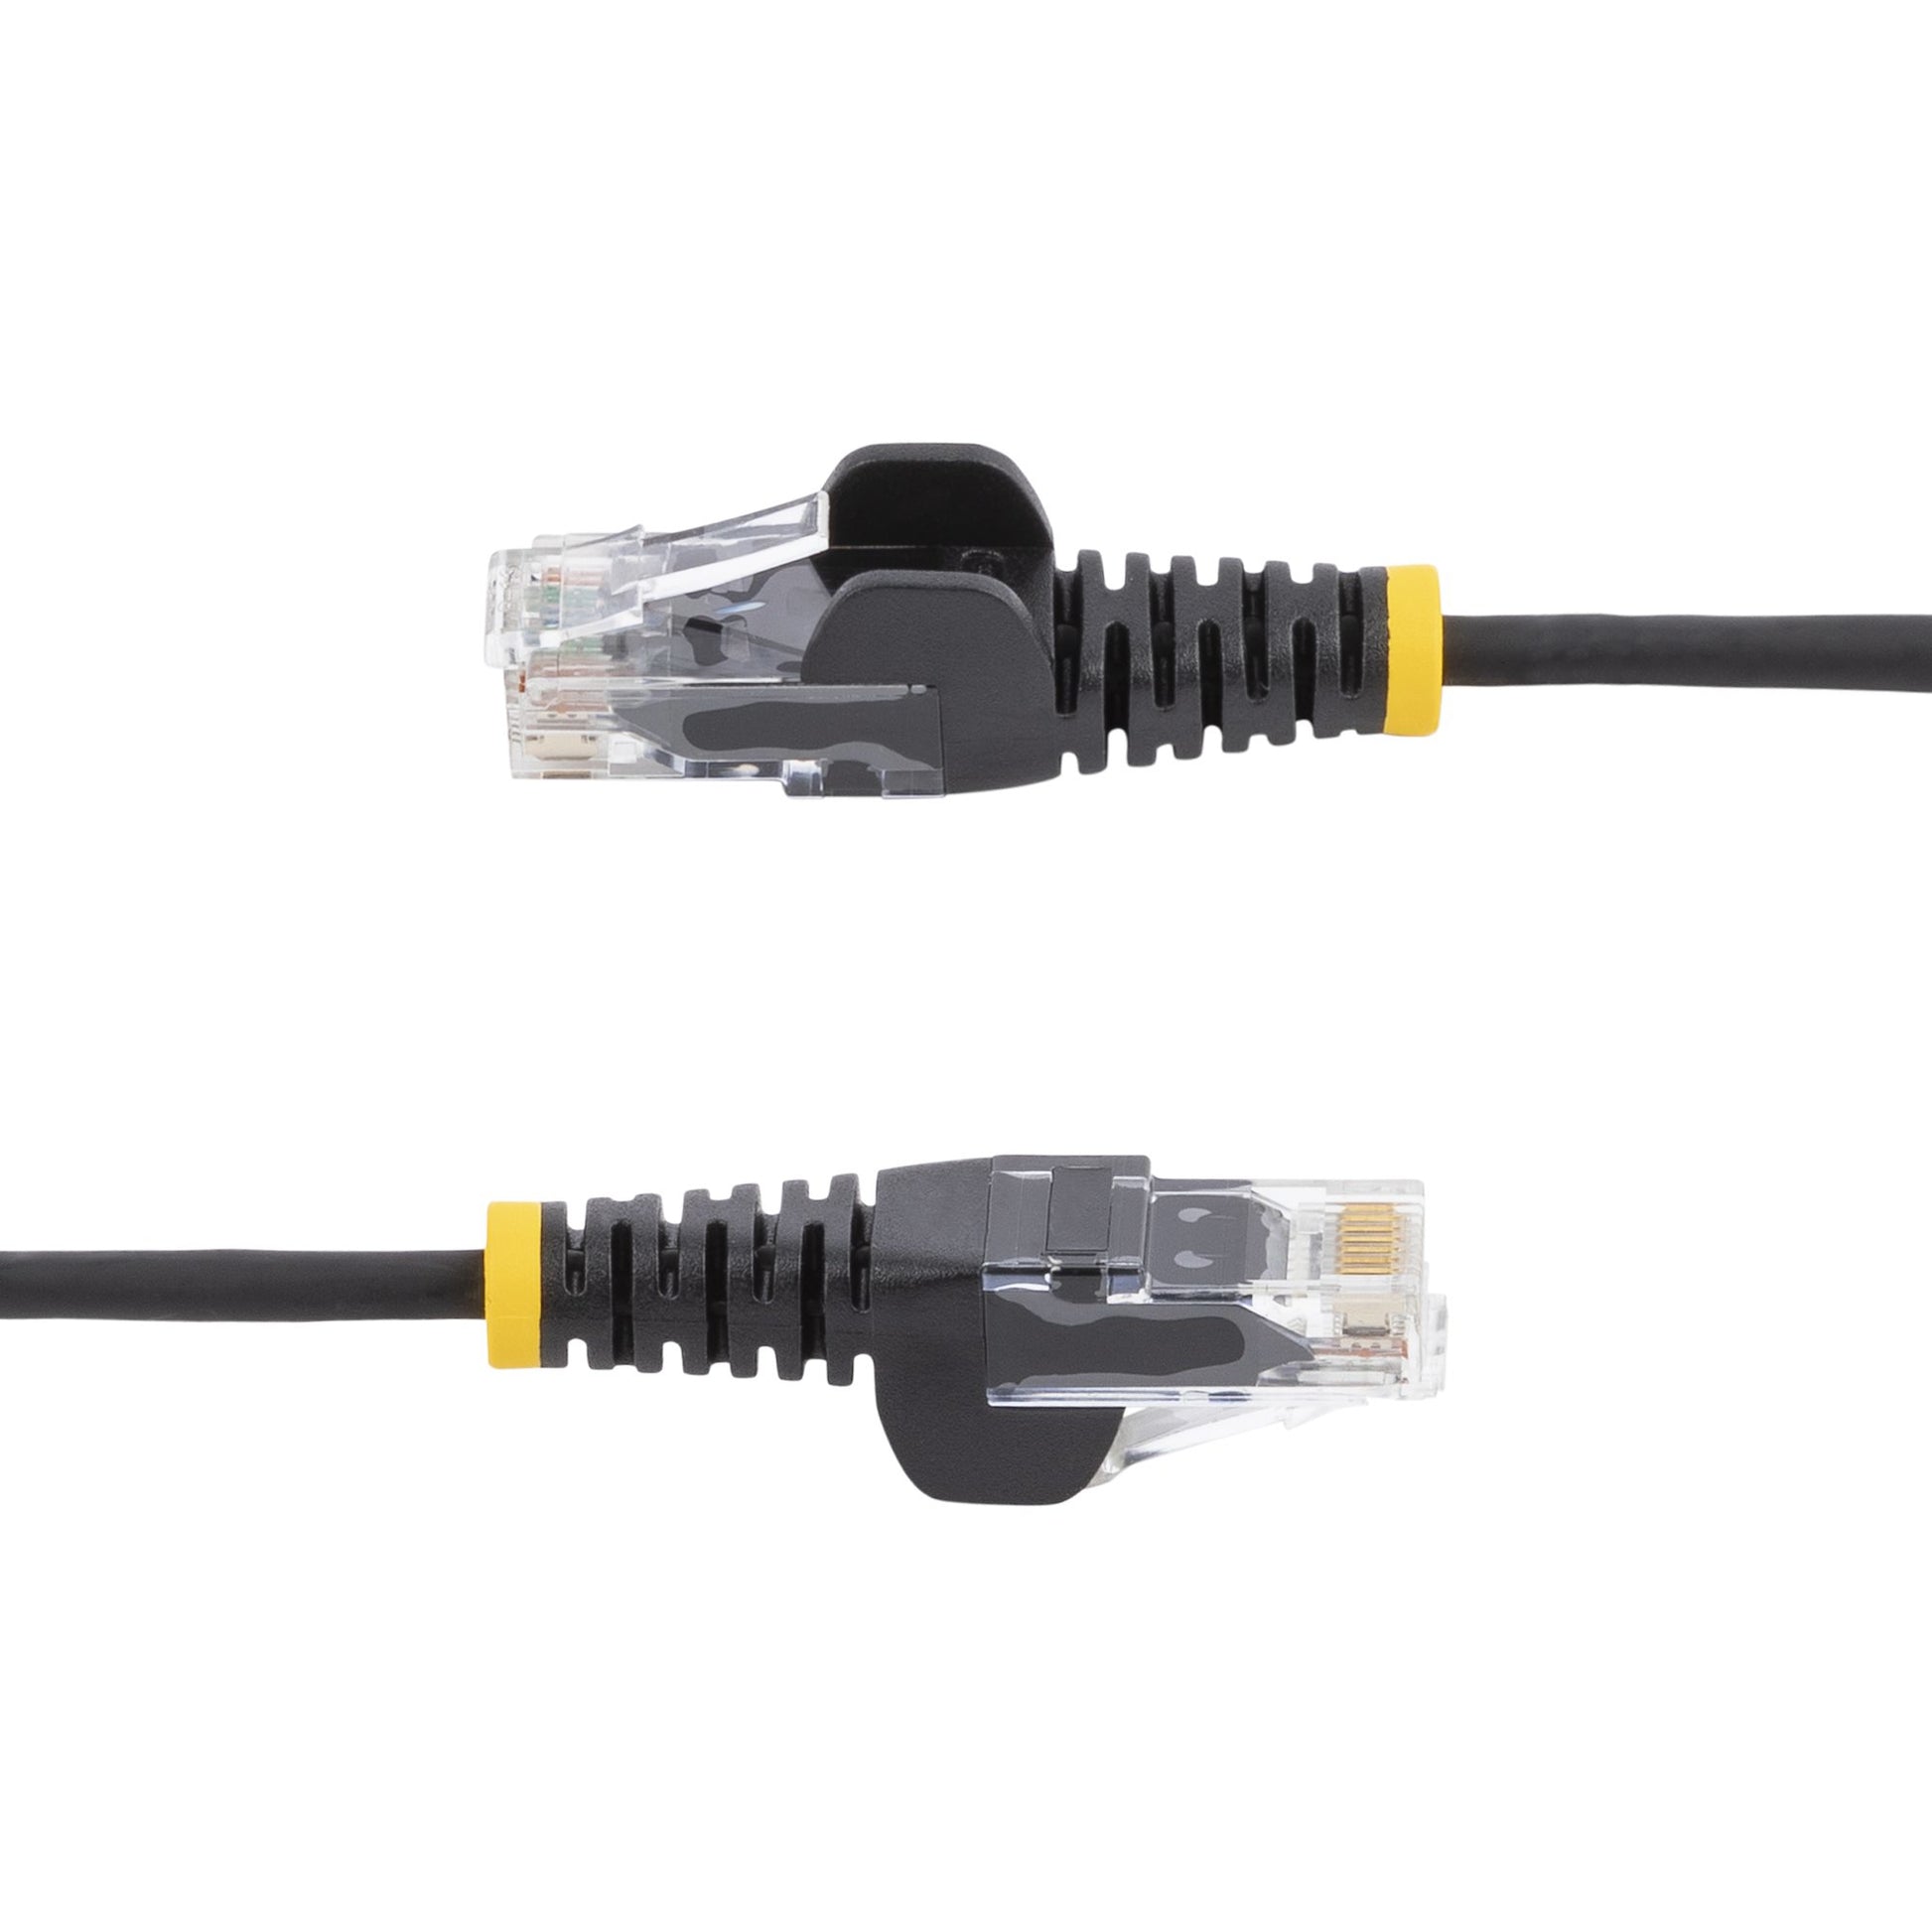 StarTech.com 2 m CAT6 Cable - Slim - Snagless RJ45 Connectors - Black-2